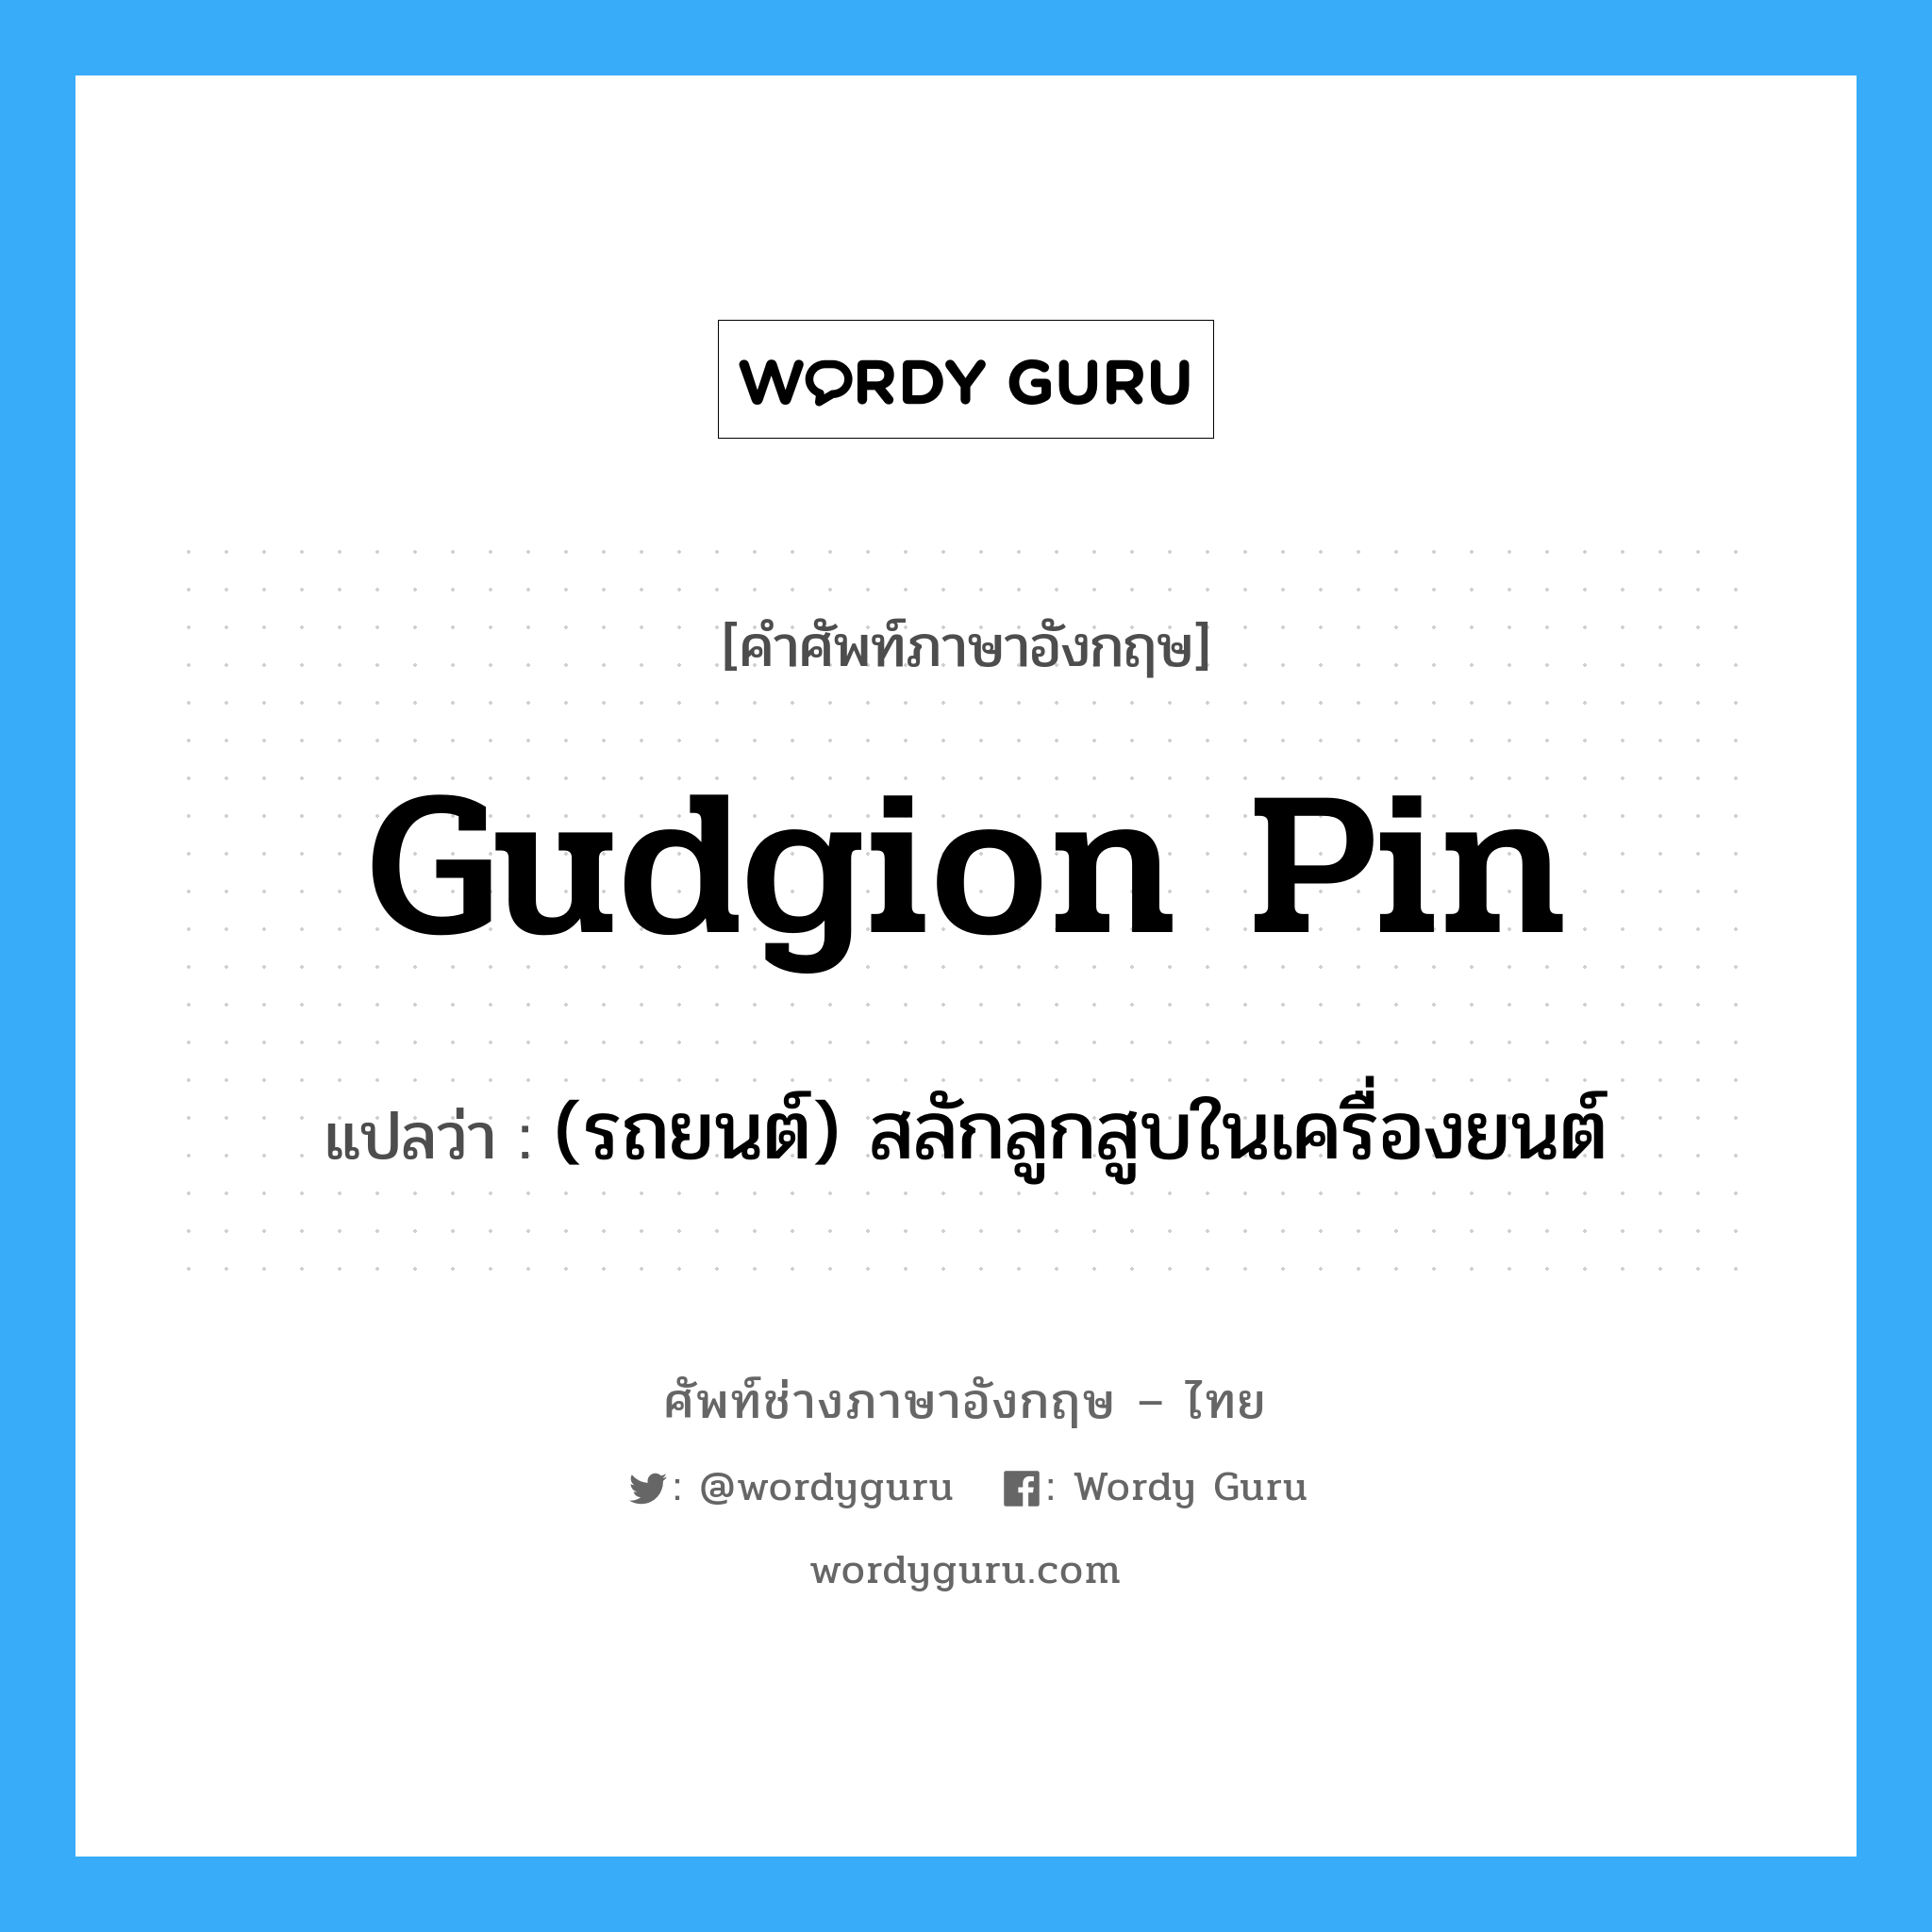 gudgion pin แปลว่า?, คำศัพท์ช่างภาษาอังกฤษ - ไทย gudgion pin คำศัพท์ภาษาอังกฤษ gudgion pin แปลว่า (รถยนต์) สลักลูกสูบในเครื่องยนต์